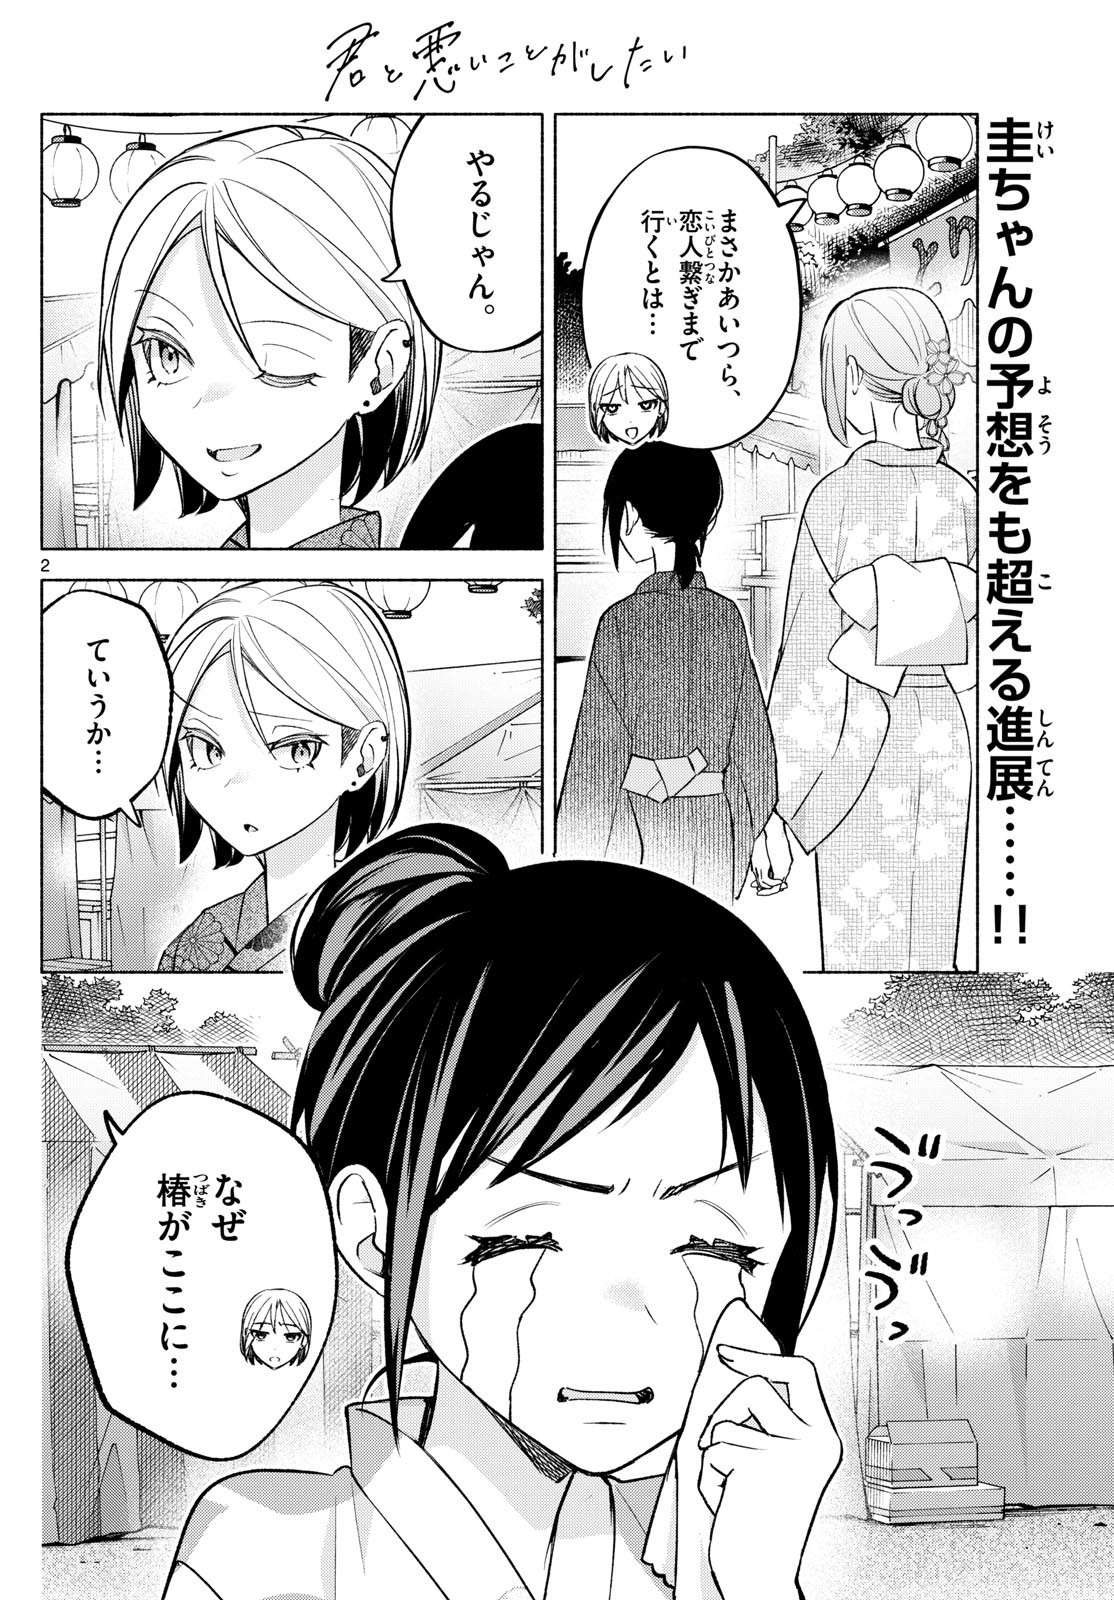 Kimi to Warui Koto ga Shitai - Chapter 046 - Page 2